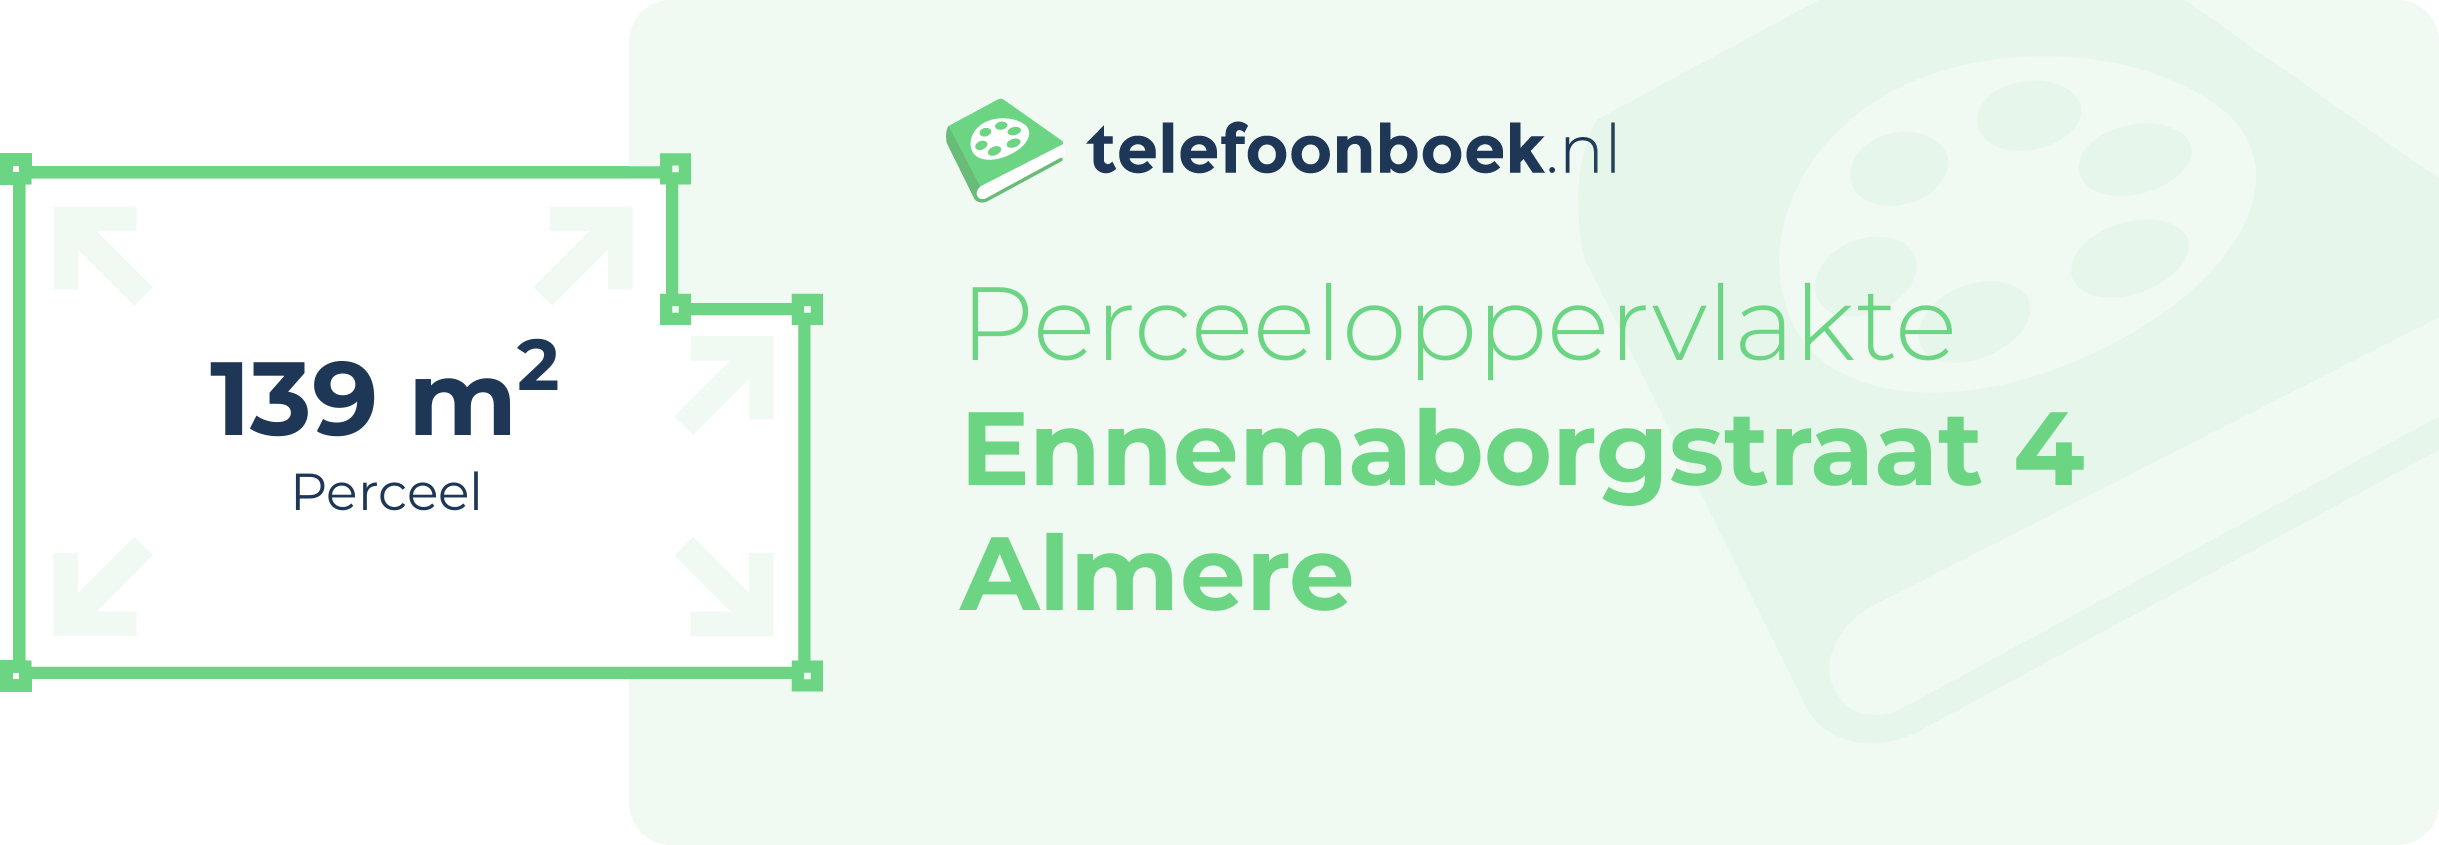 Perceeloppervlakte Ennemaborgstraat 4 Almere